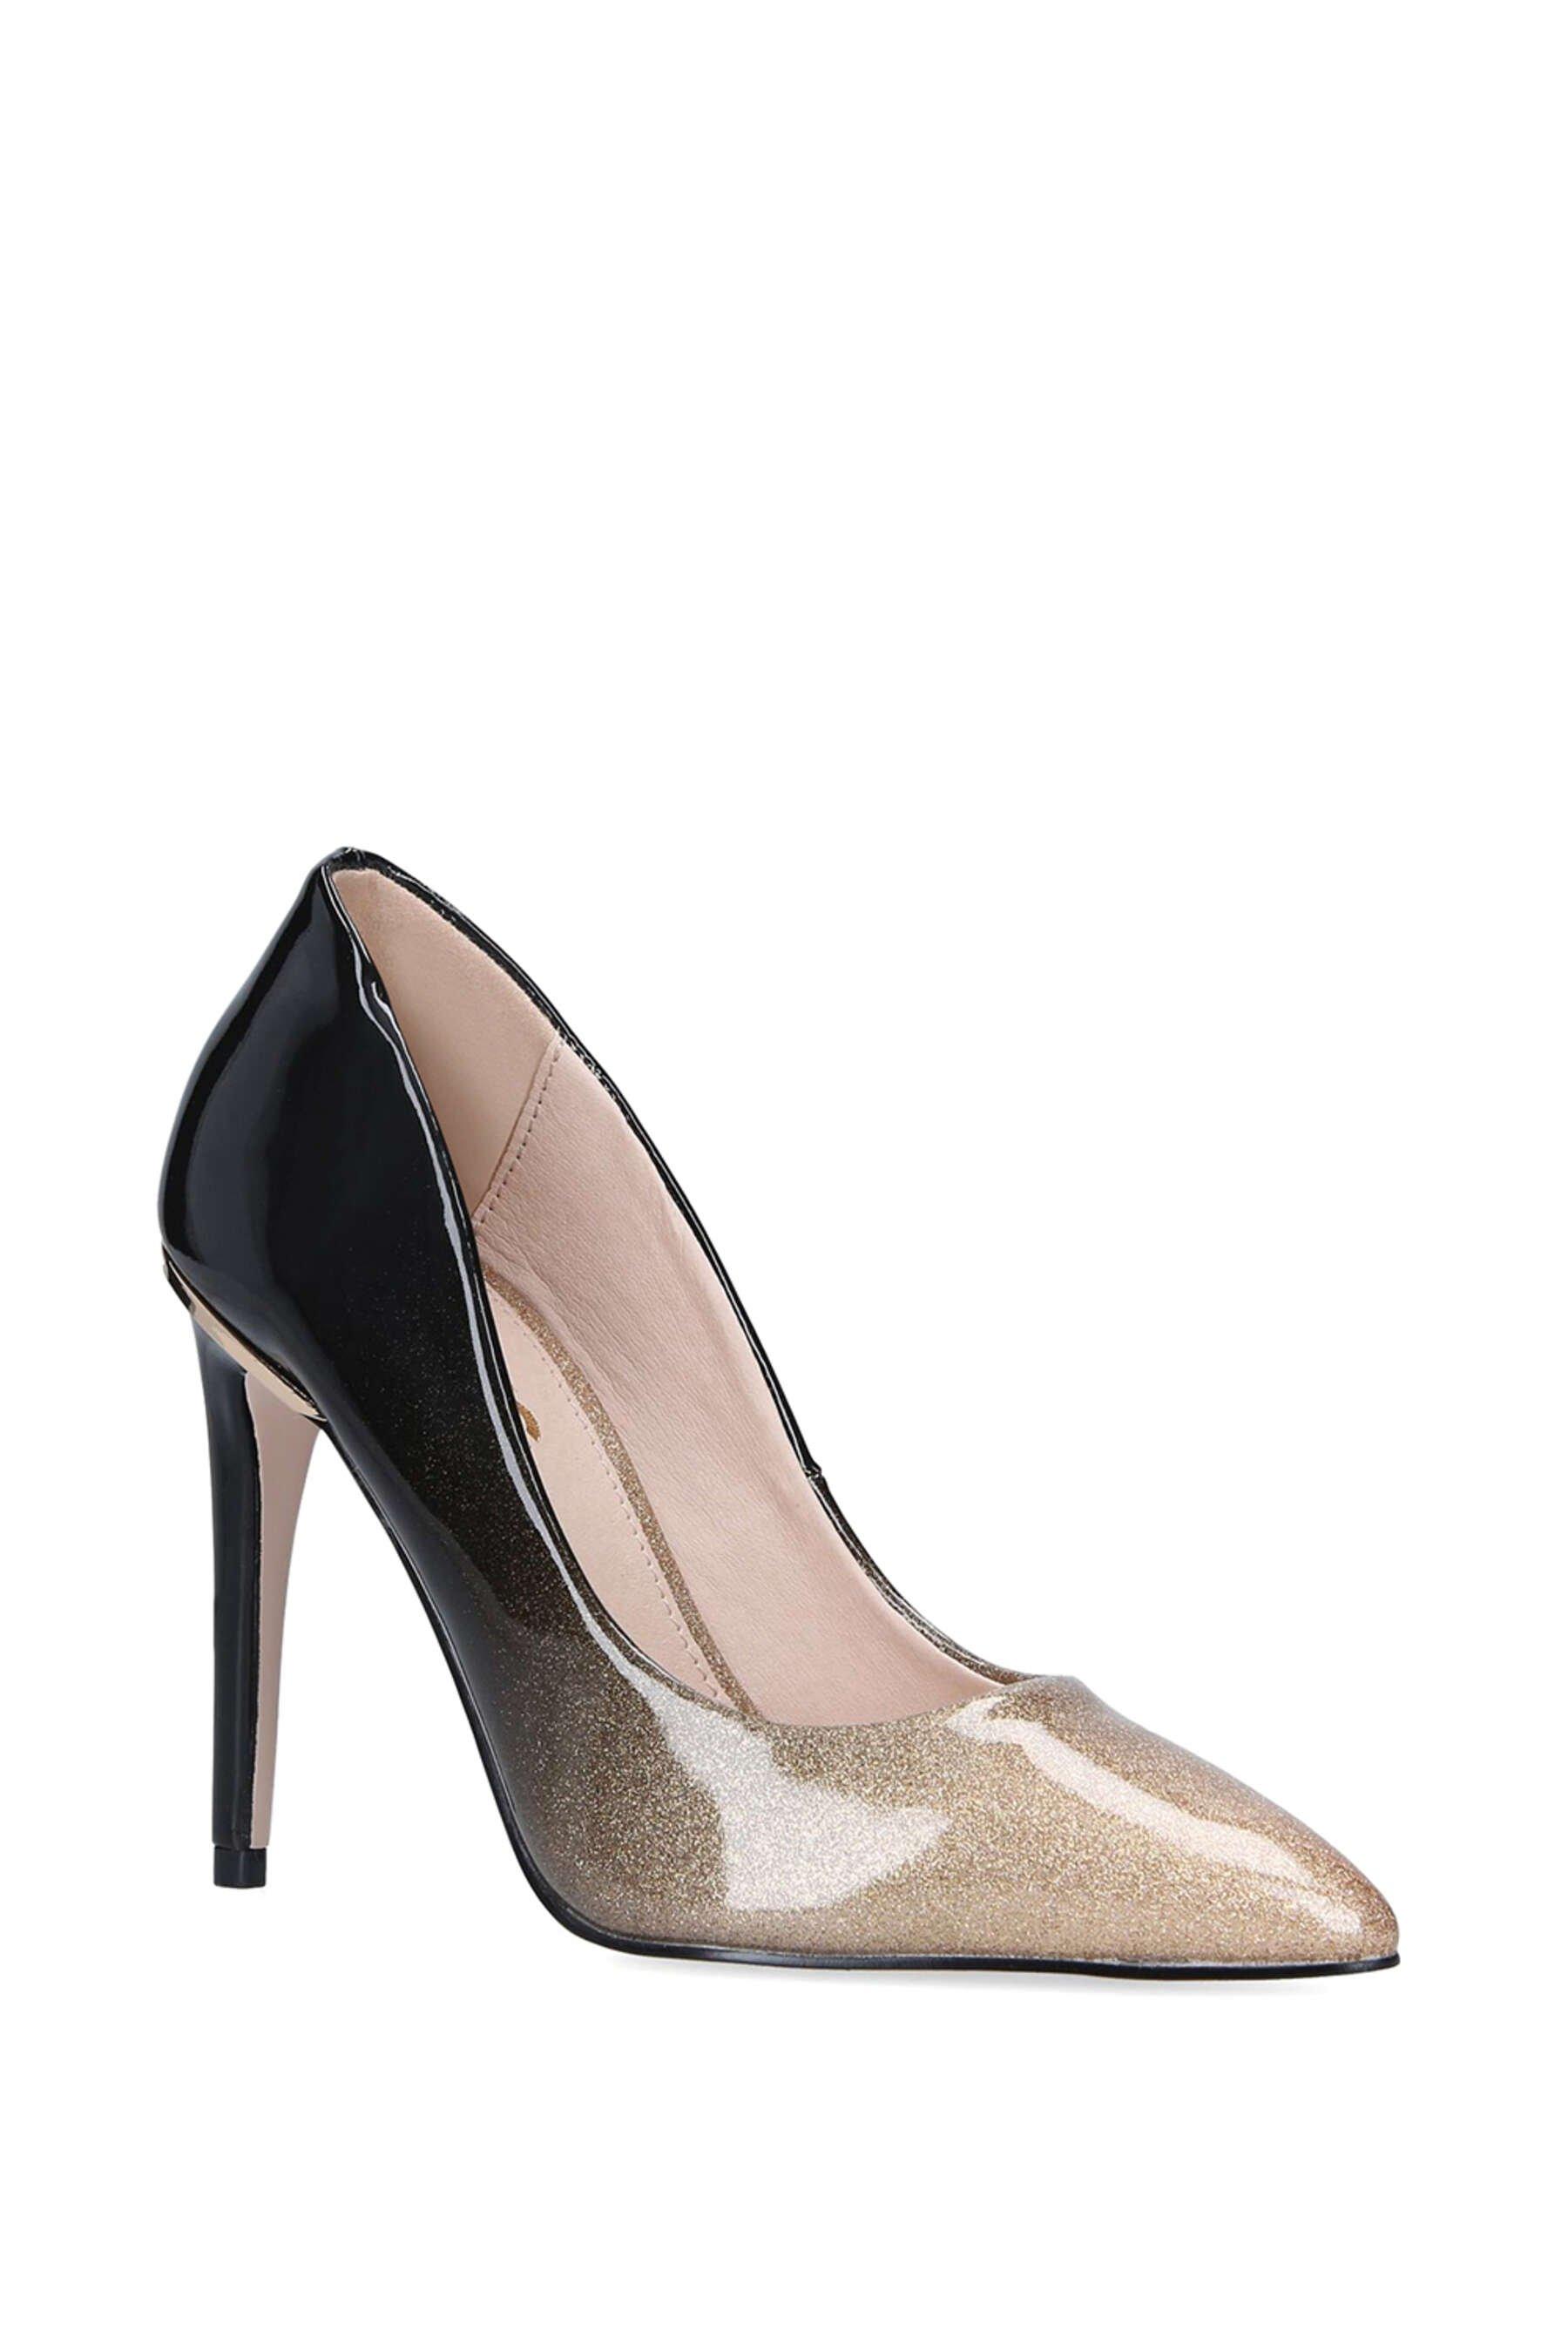 Miss KG (Kurt Geiger) Neon snakeskin Heel Sandals, Women's Fashion,  Footwear, Heels on Carousell